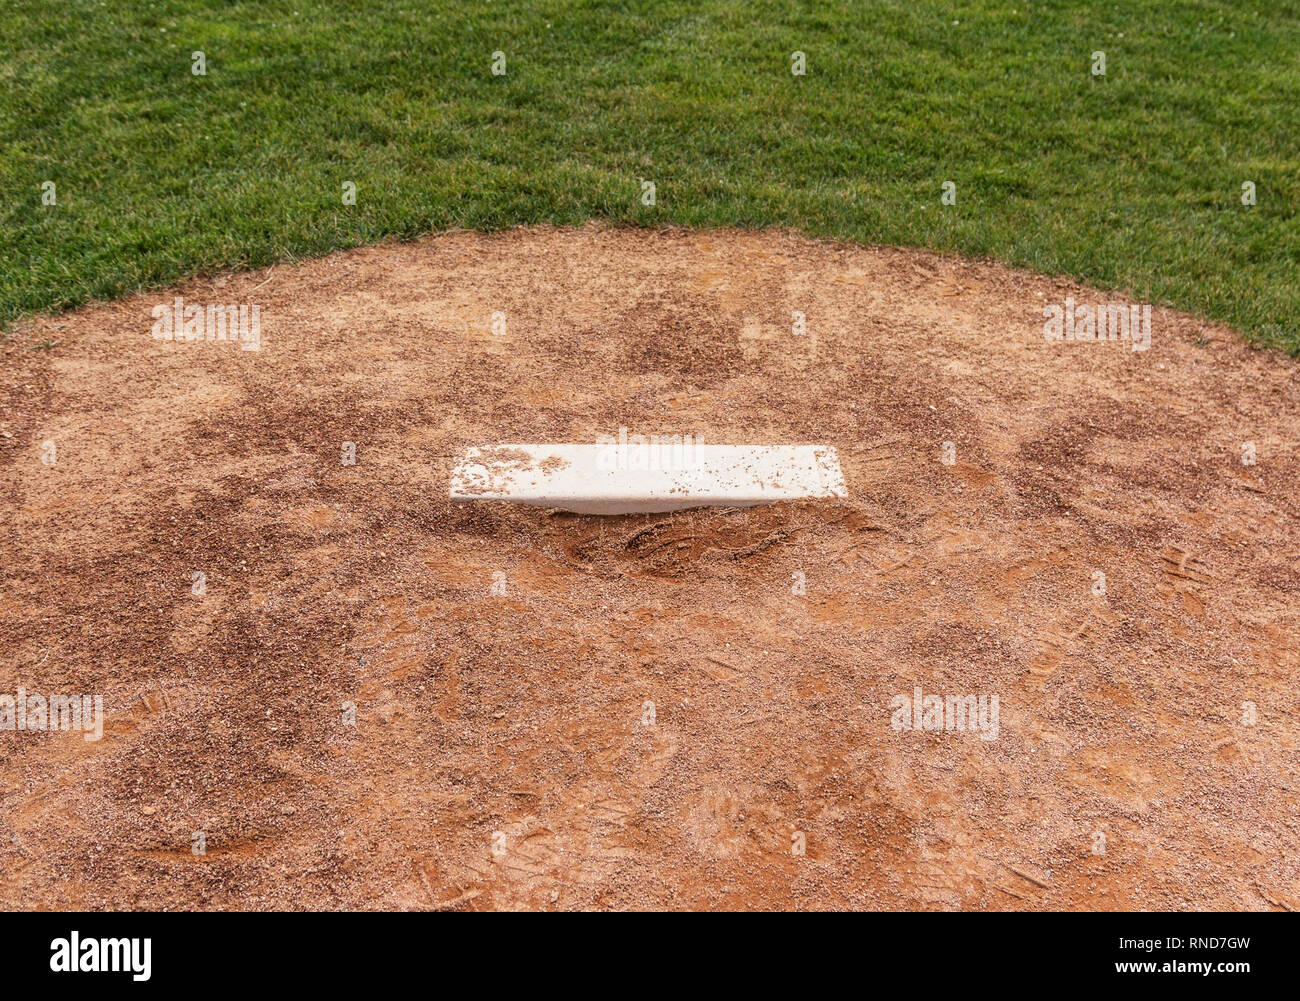 A baseball fields pitchers mound close up. Stock Photo